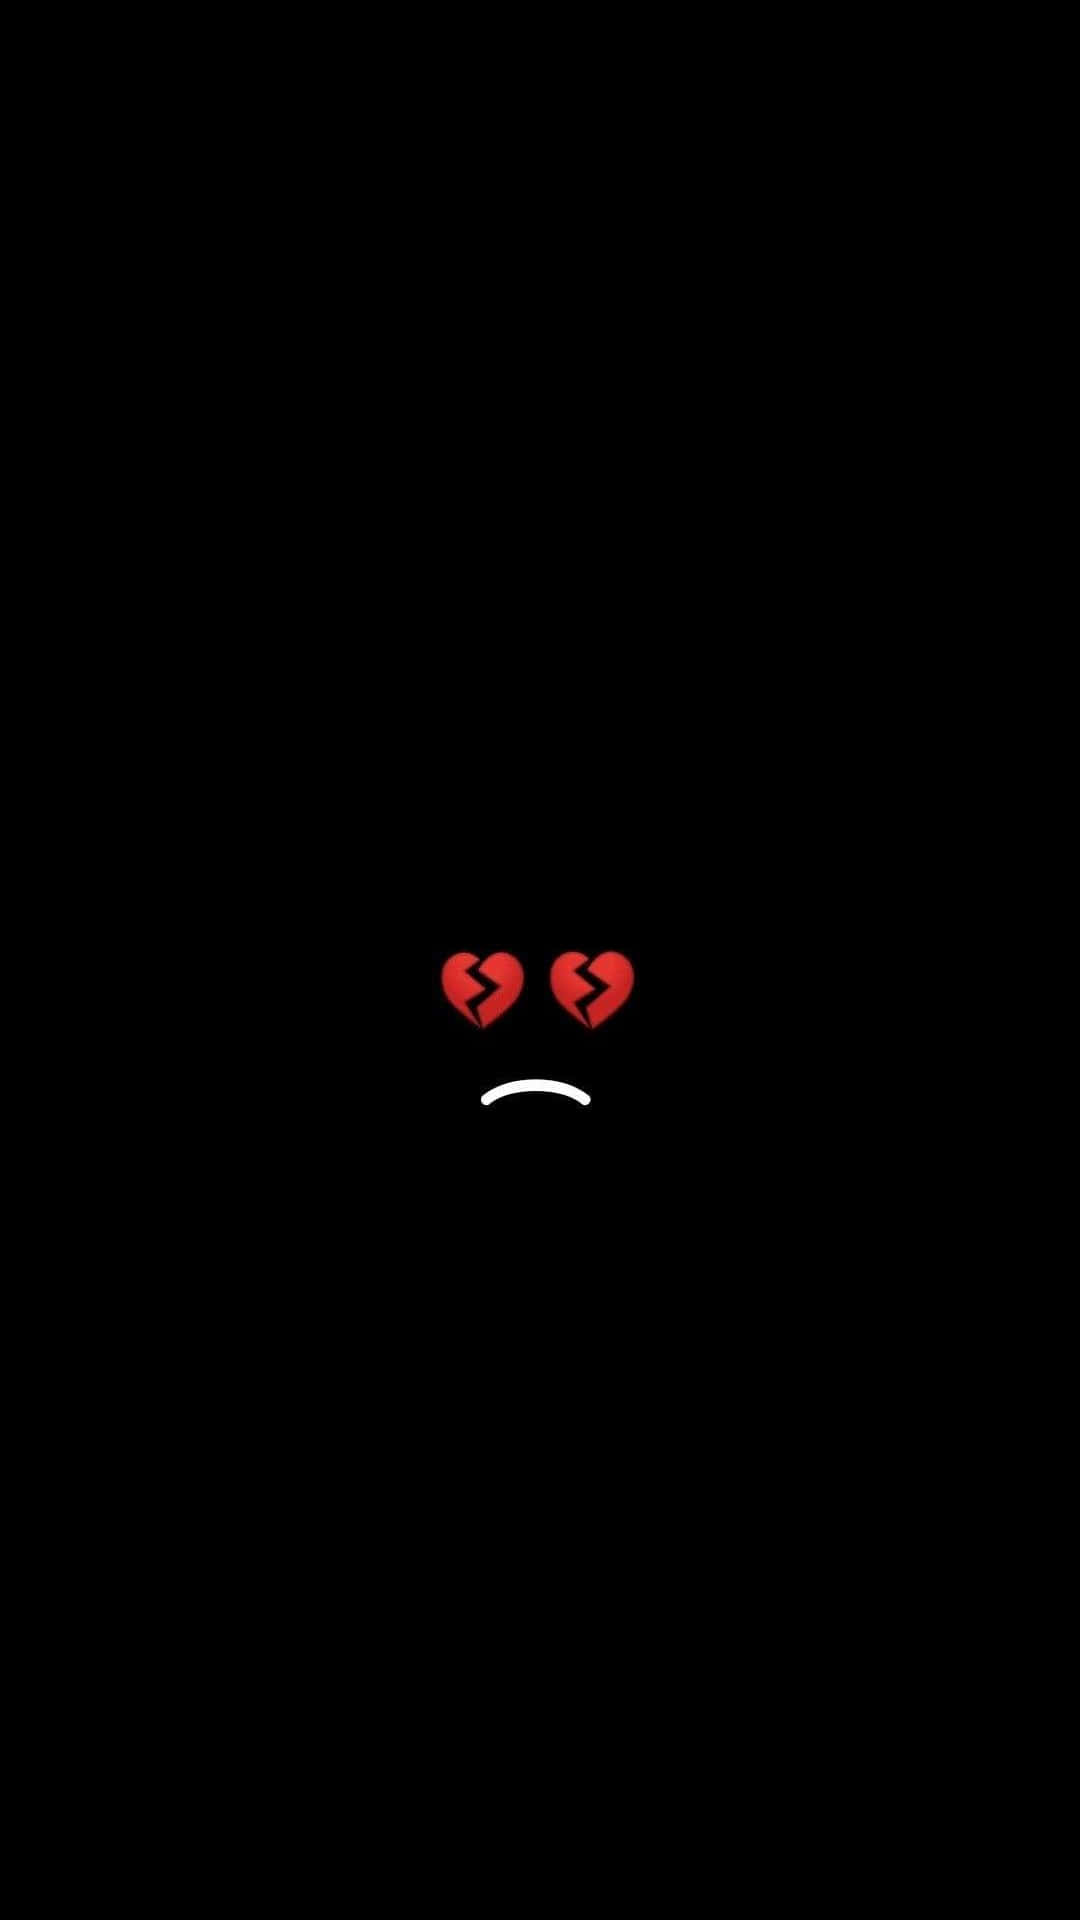 Depressivertrauriger Emoji Für Das Iphone Wallpaper